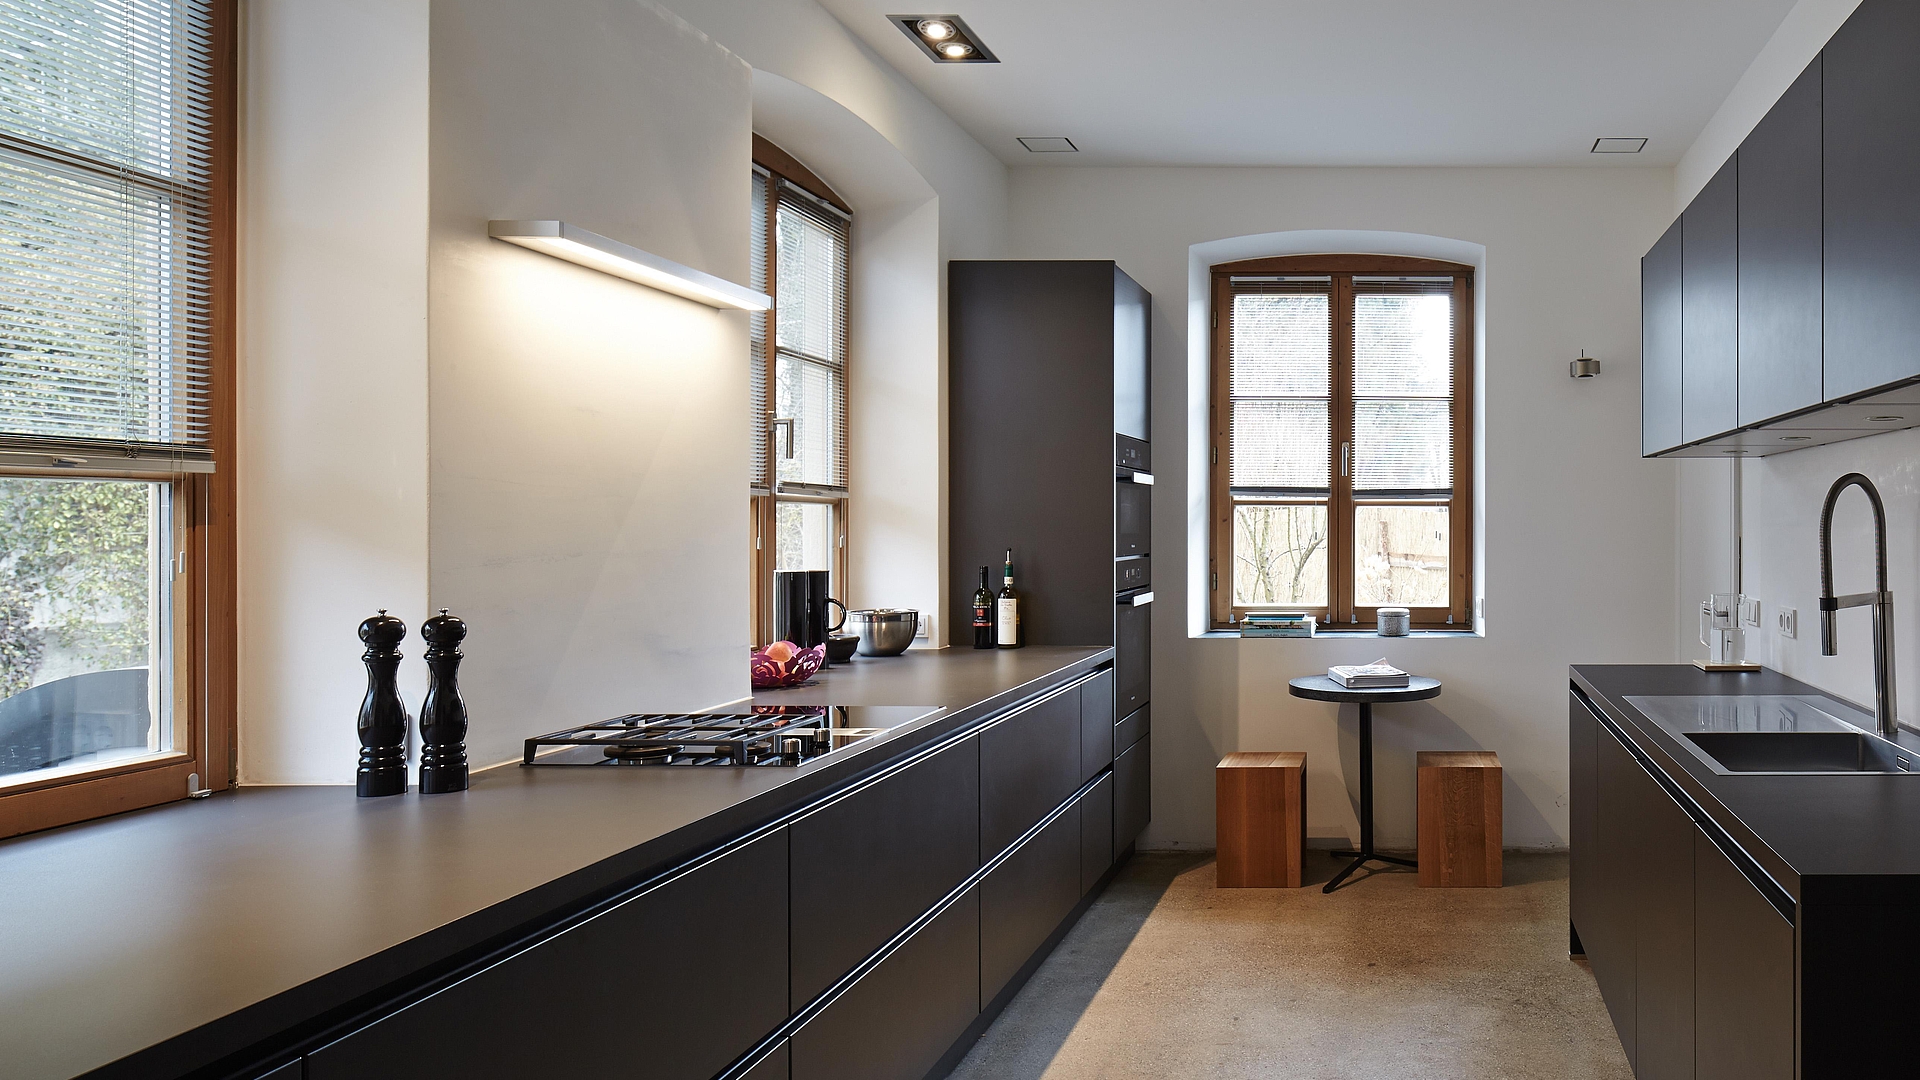 Geradlinigkeit in der Küche: Schwarzer Satinlack, Edelstahl und Glas